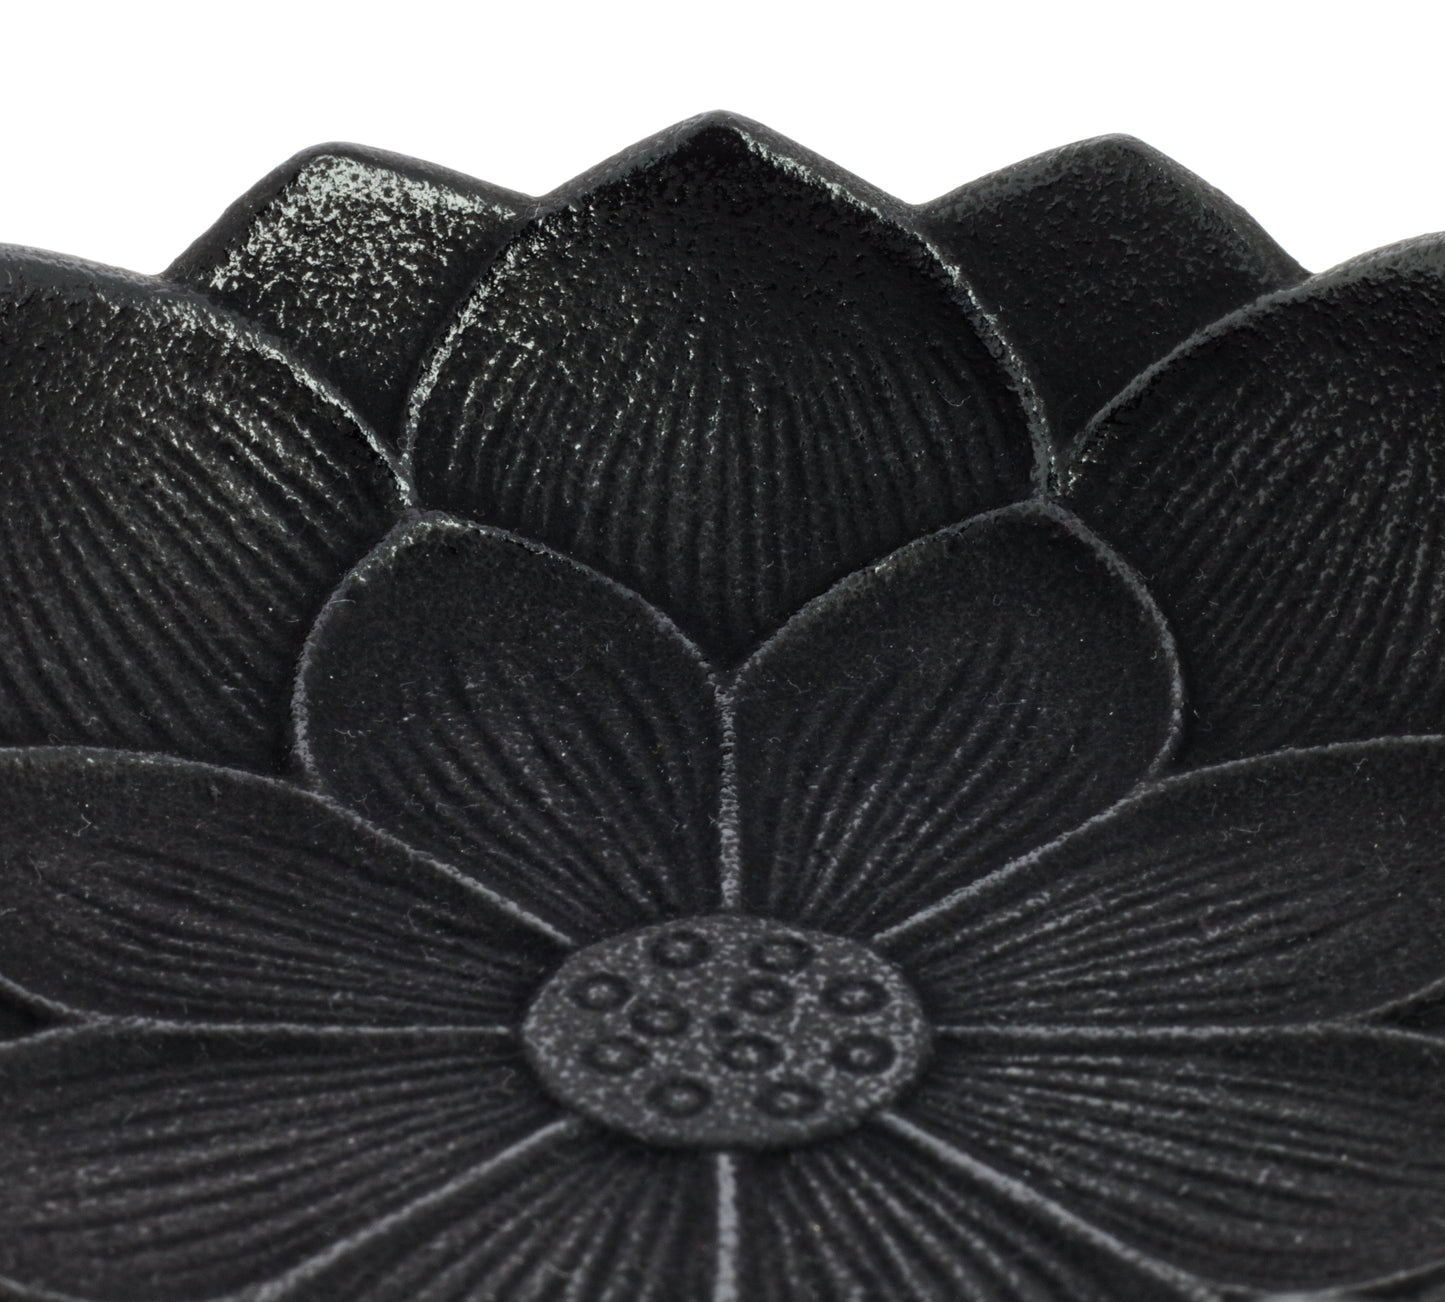 Iwachu Incense Burner - Black Lotus Flower